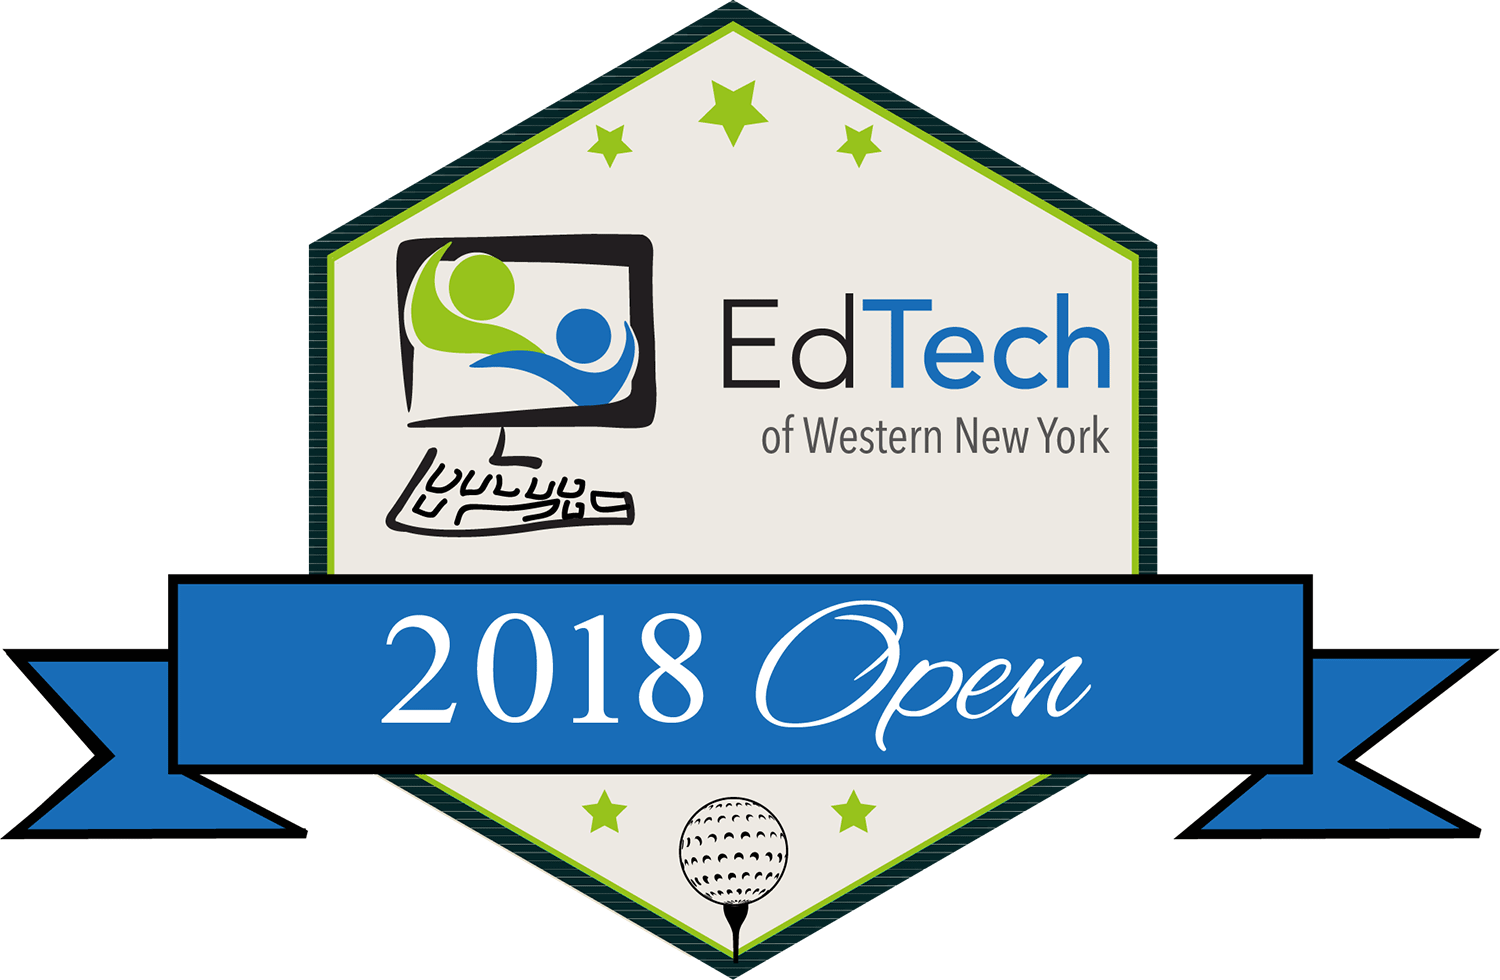 4th Annual Ed Tech Open